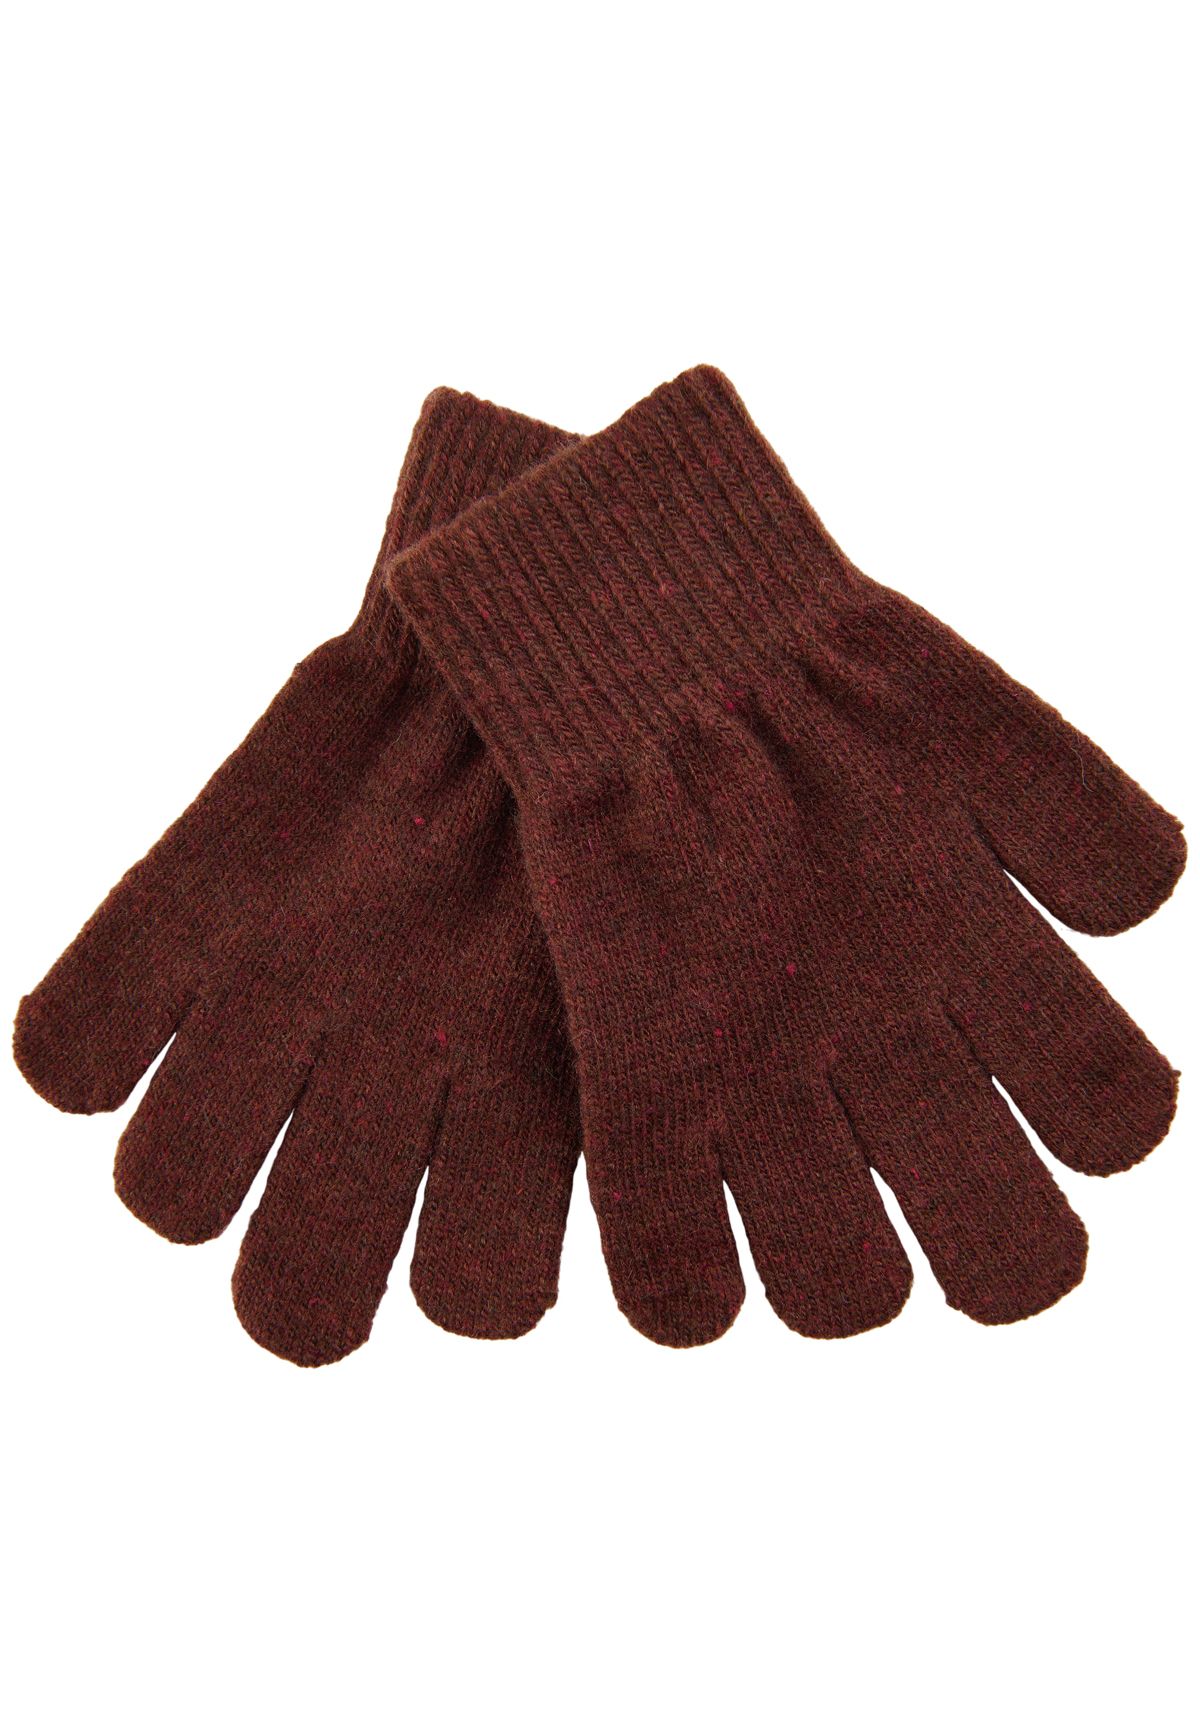 Mikk-Line - Schöne Strick-Handschuhe mit Wolle in Decadent Chocolate -  Marken - IsaDisaKids